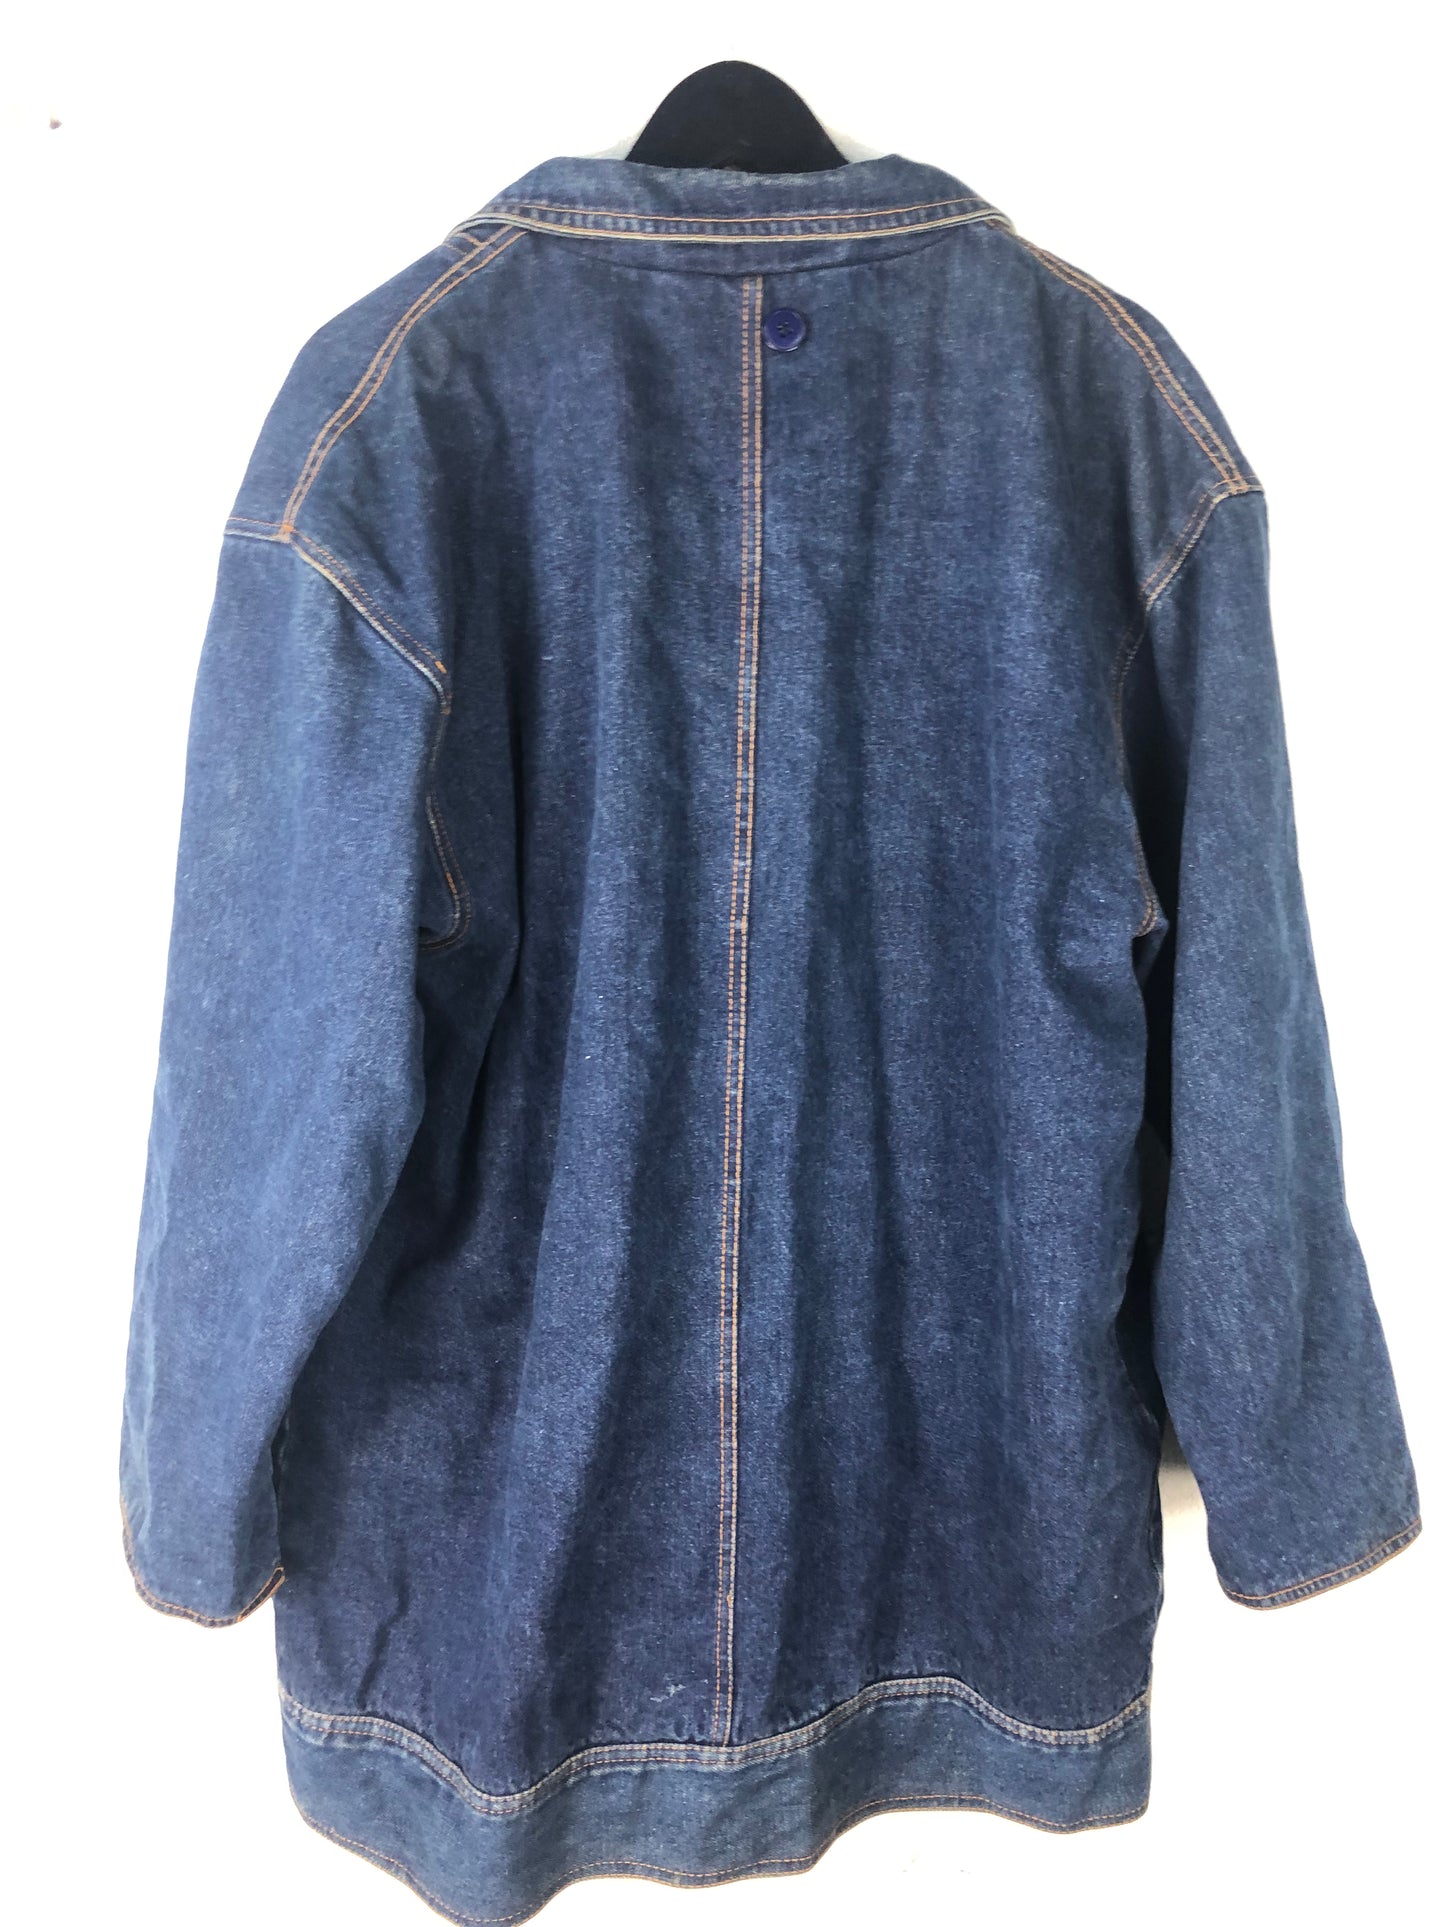 VTG Blue Jean Jacket Sz XL